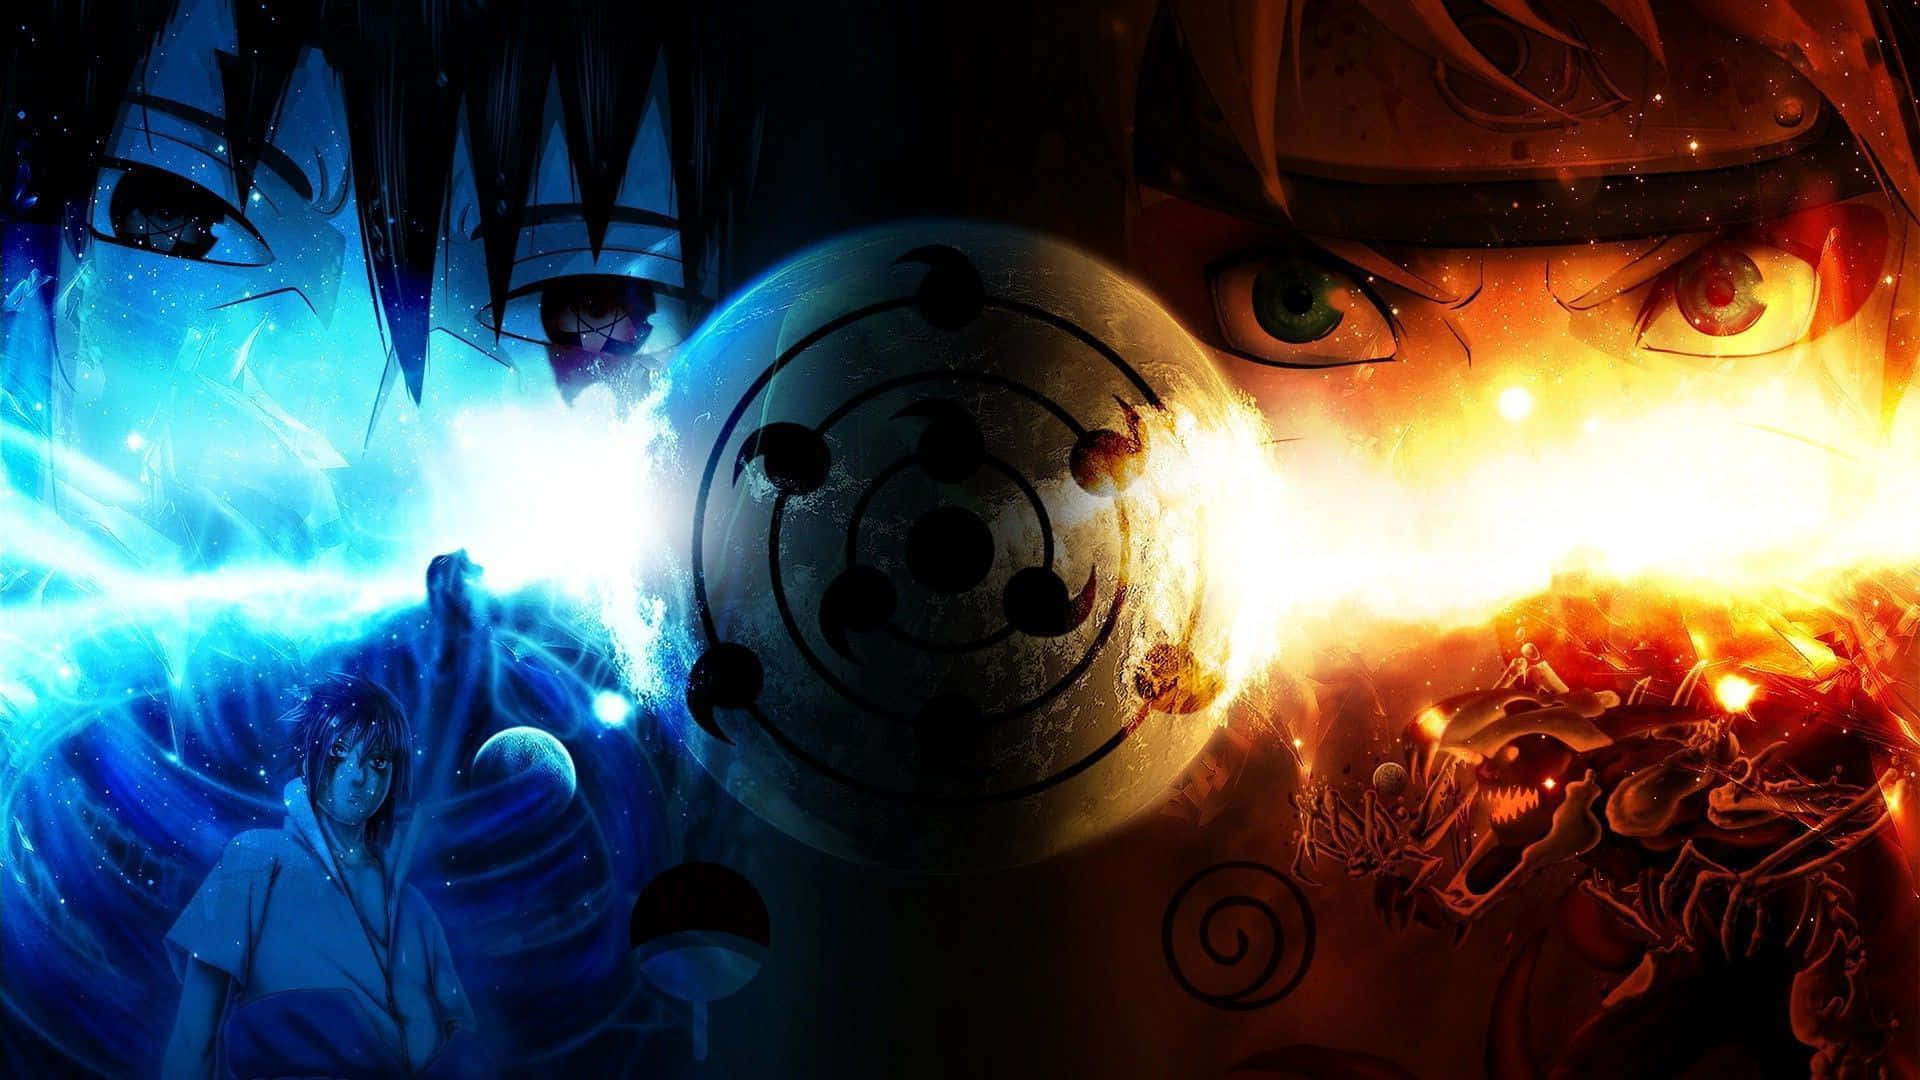 Seguii Tuoi Sogni: Il Potere Di Naruto Neon. Sfondo